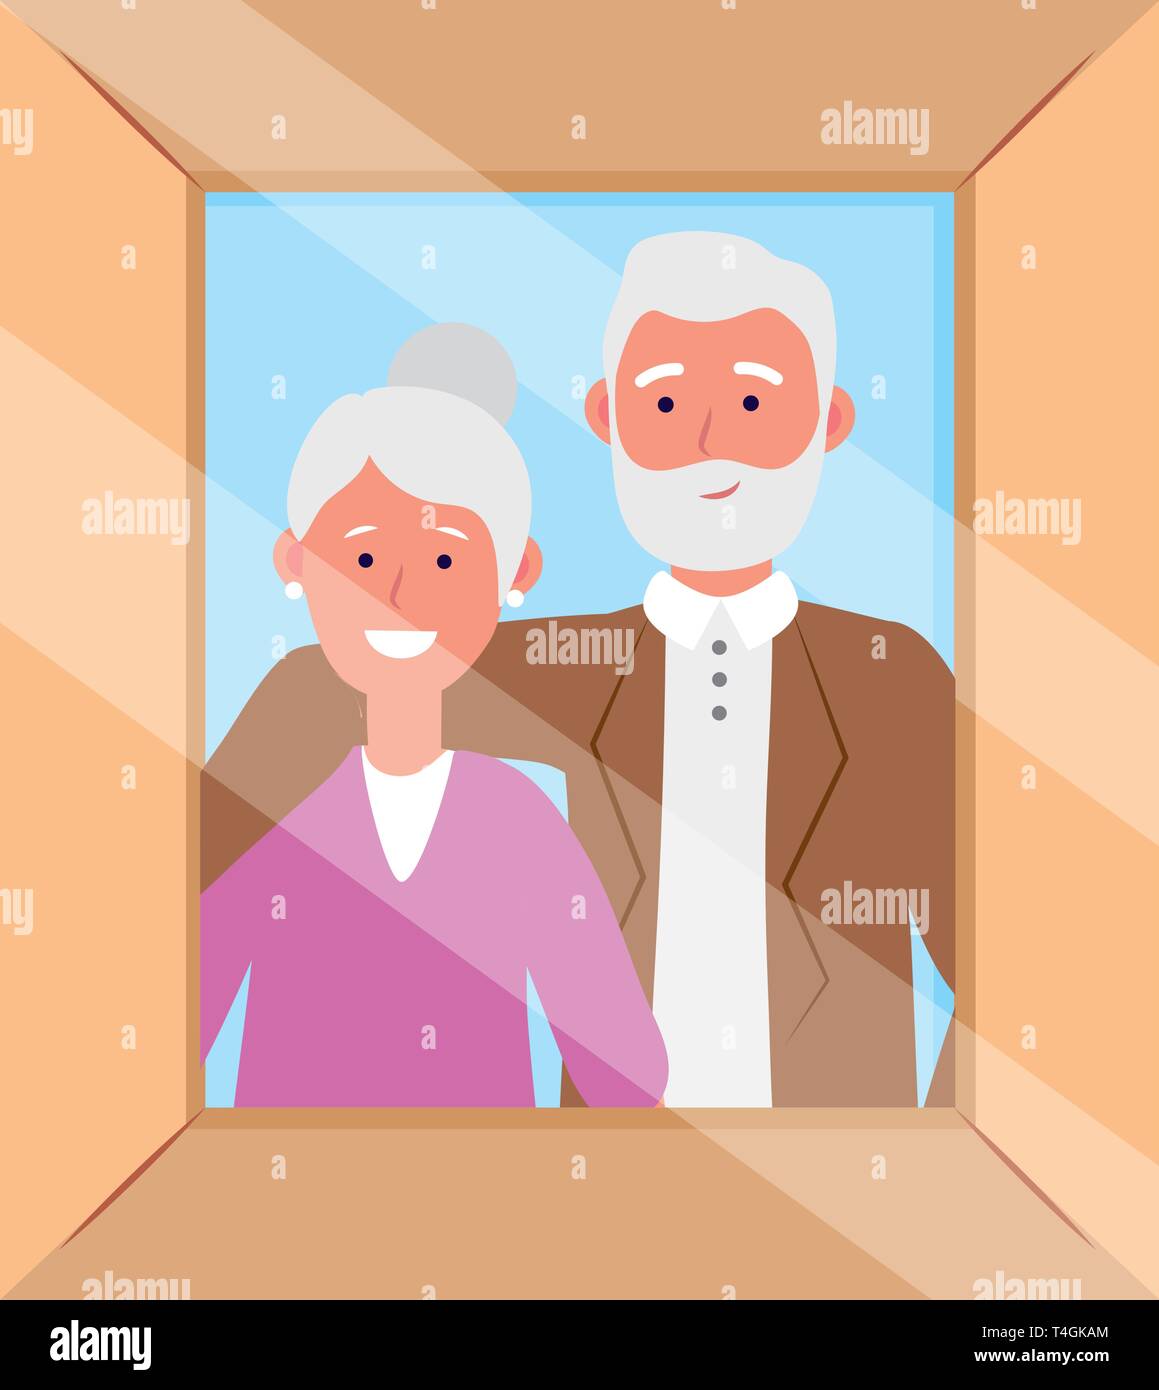 Ältere Paare avatar Zeichentrickfigur Bilderrahmen Vector Illustration graphic design Stock Vektor